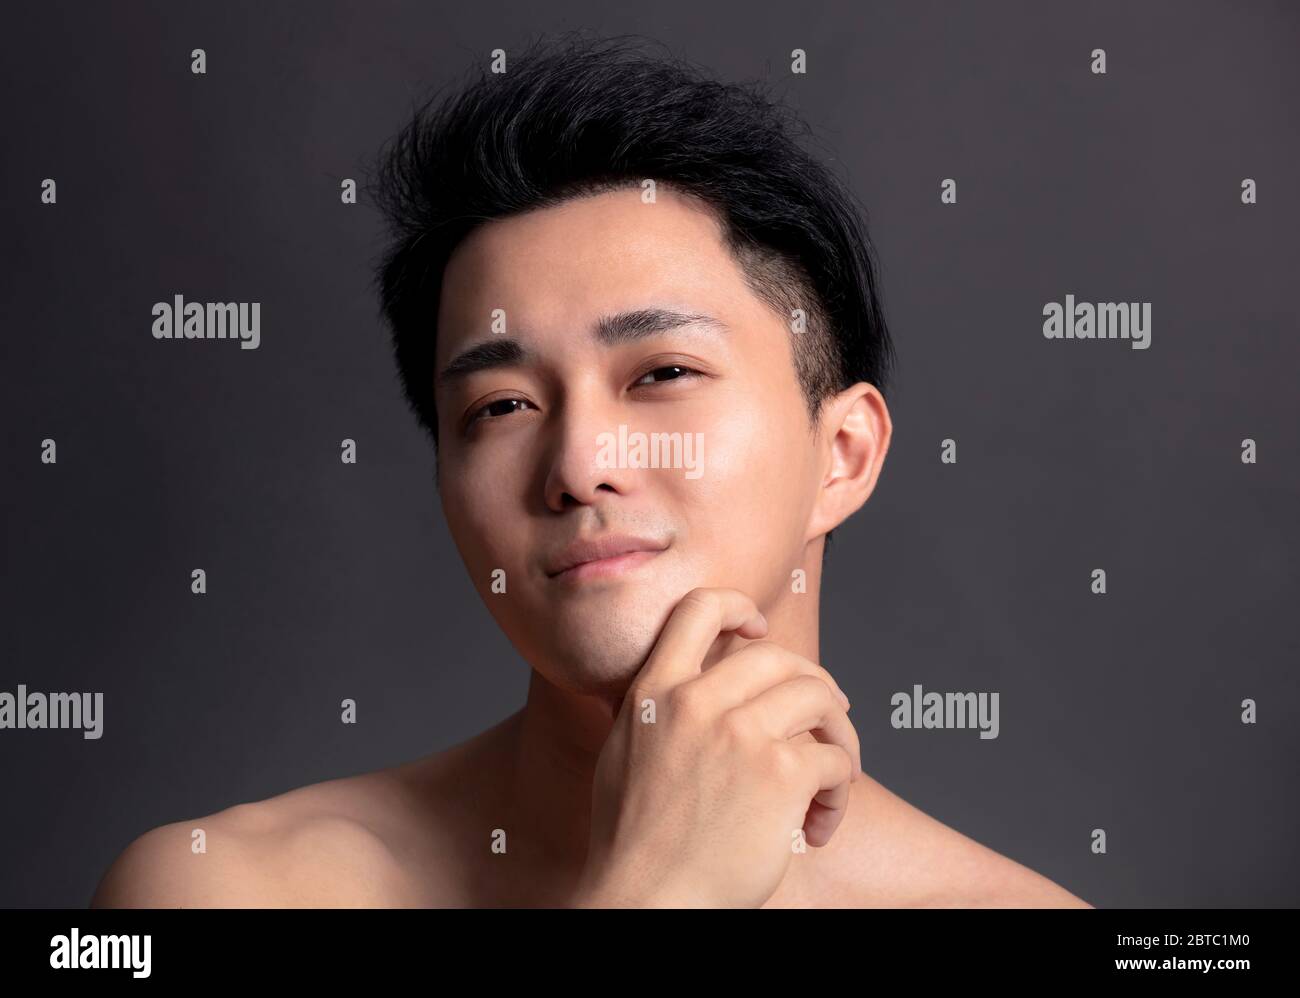 Nahaufnahme Porträt von attraktiven jungen asiatischen Mann Gesicht Stockfoto